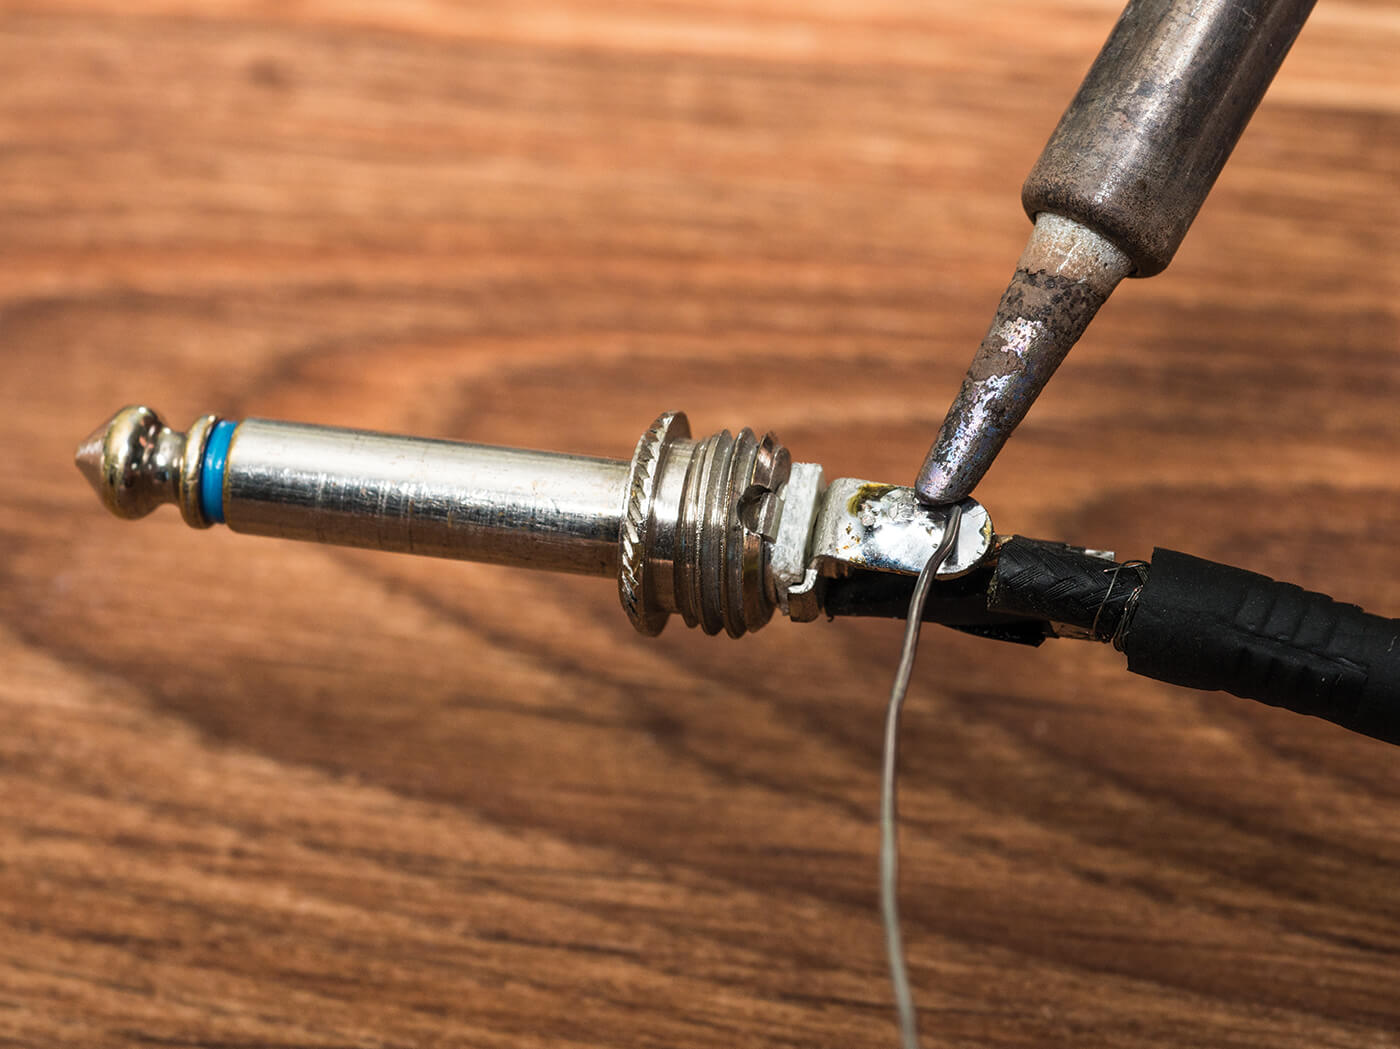 DIY Repairing a jack lead soldering